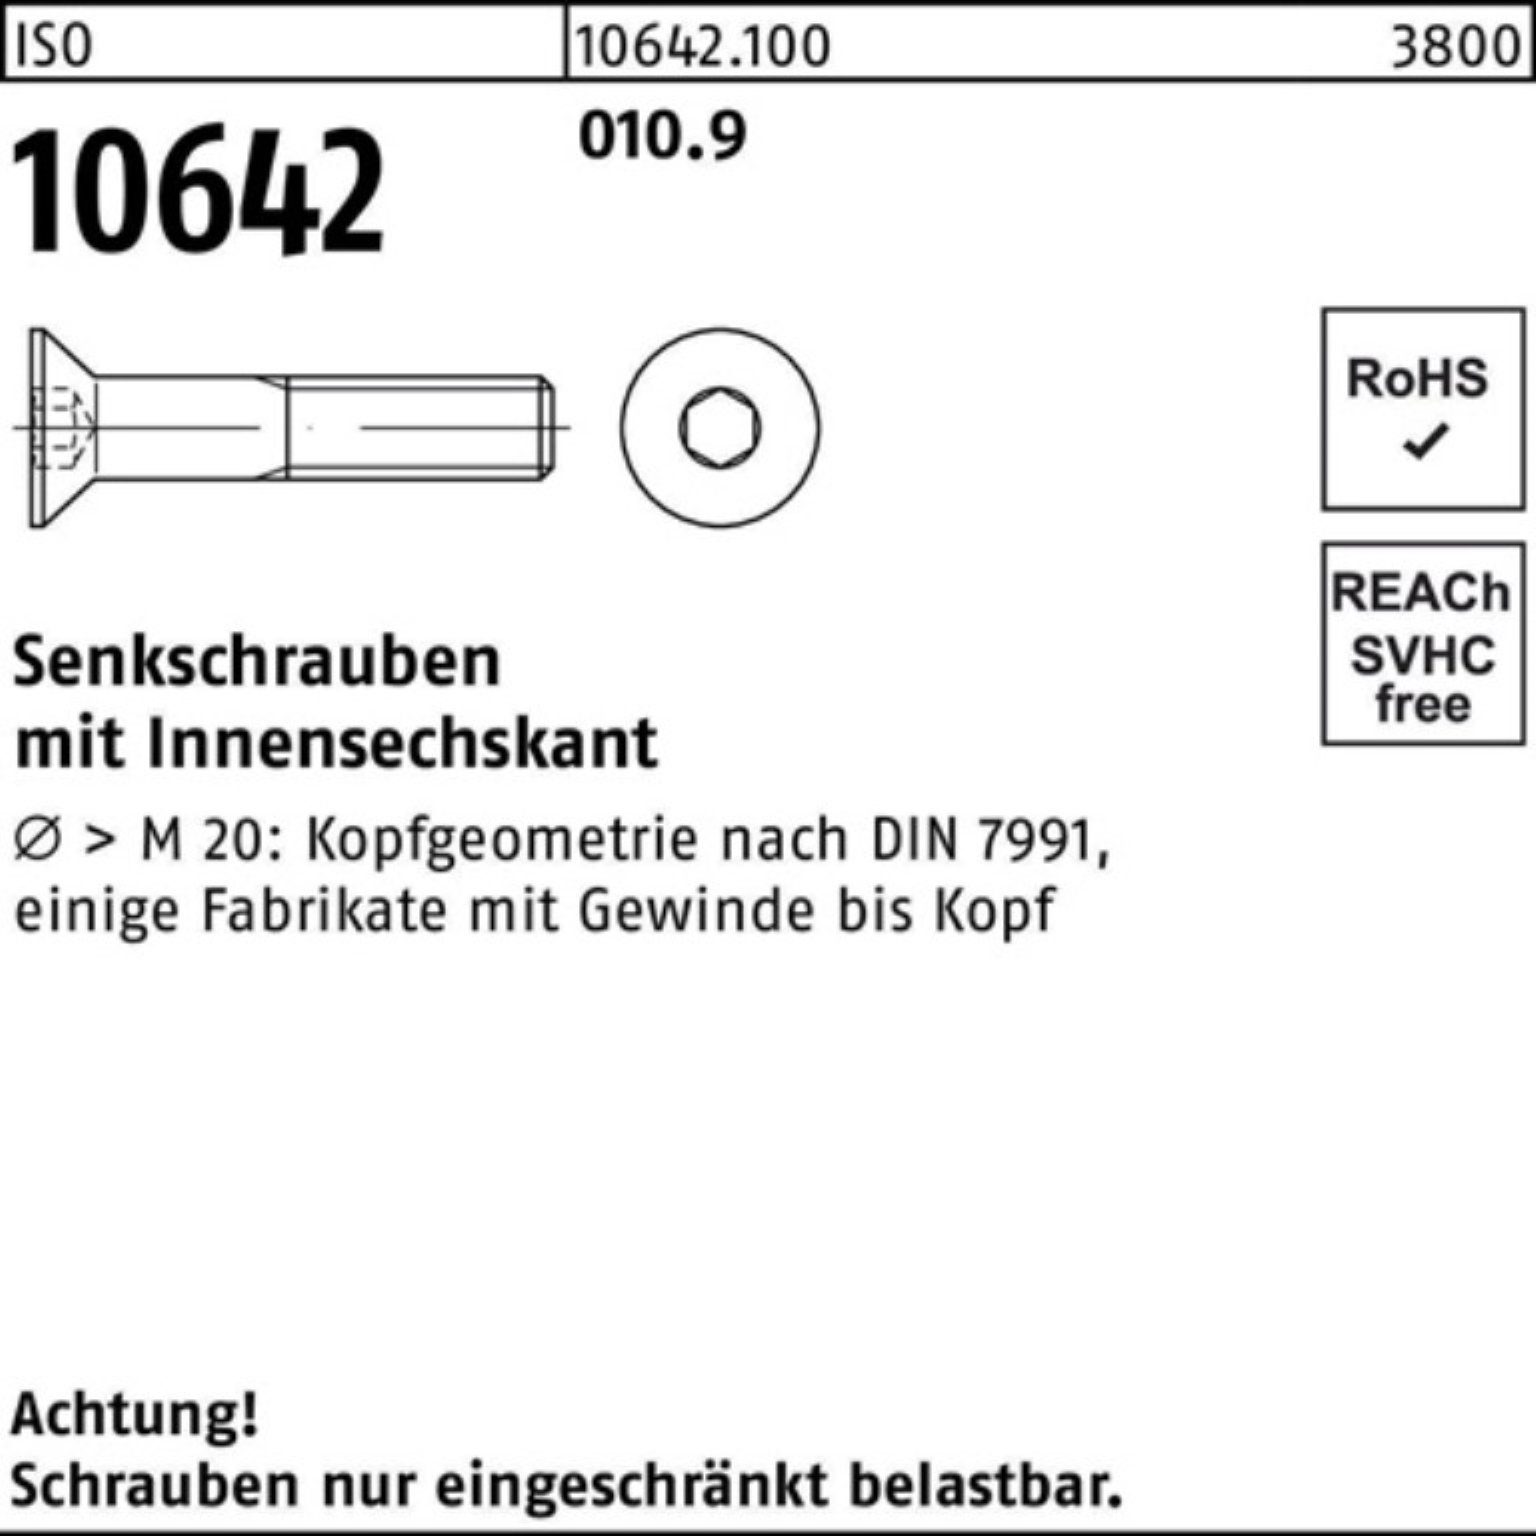 M4x IS Pack Stück Senkschraube 500 10 Senkschraube Reyher 500er Innen-6kt 010.9 ISO 10642